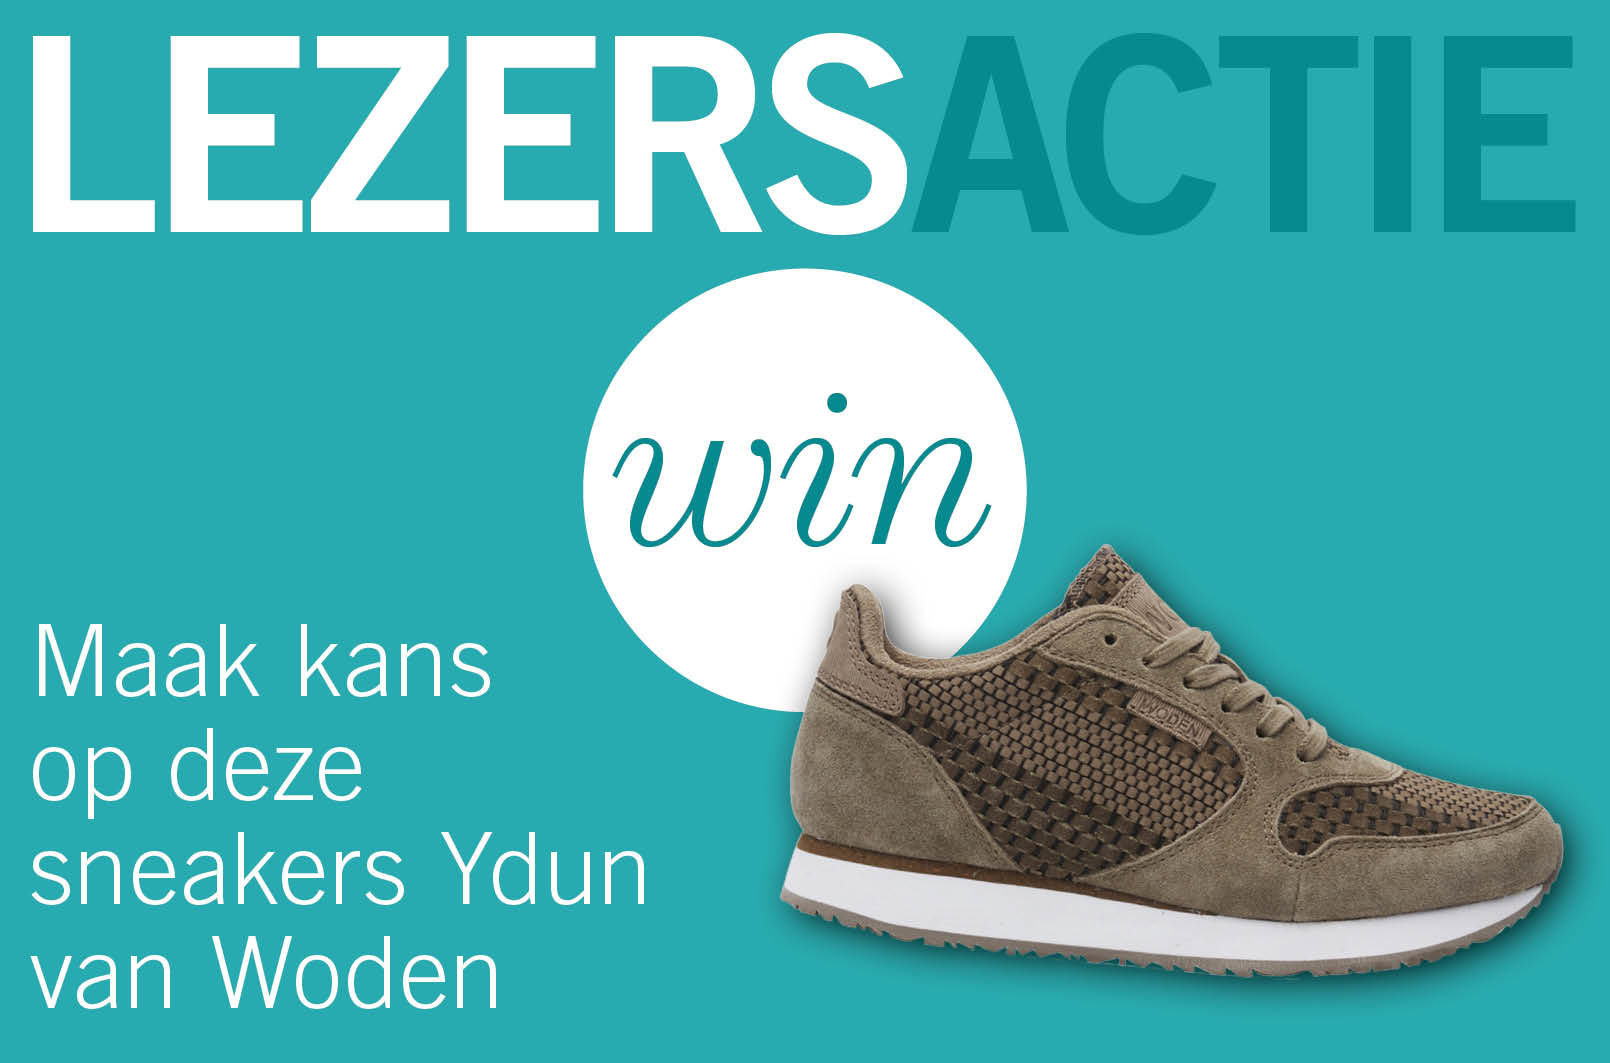 Maak kans op deze prachtige sneakers Ydun van Woden